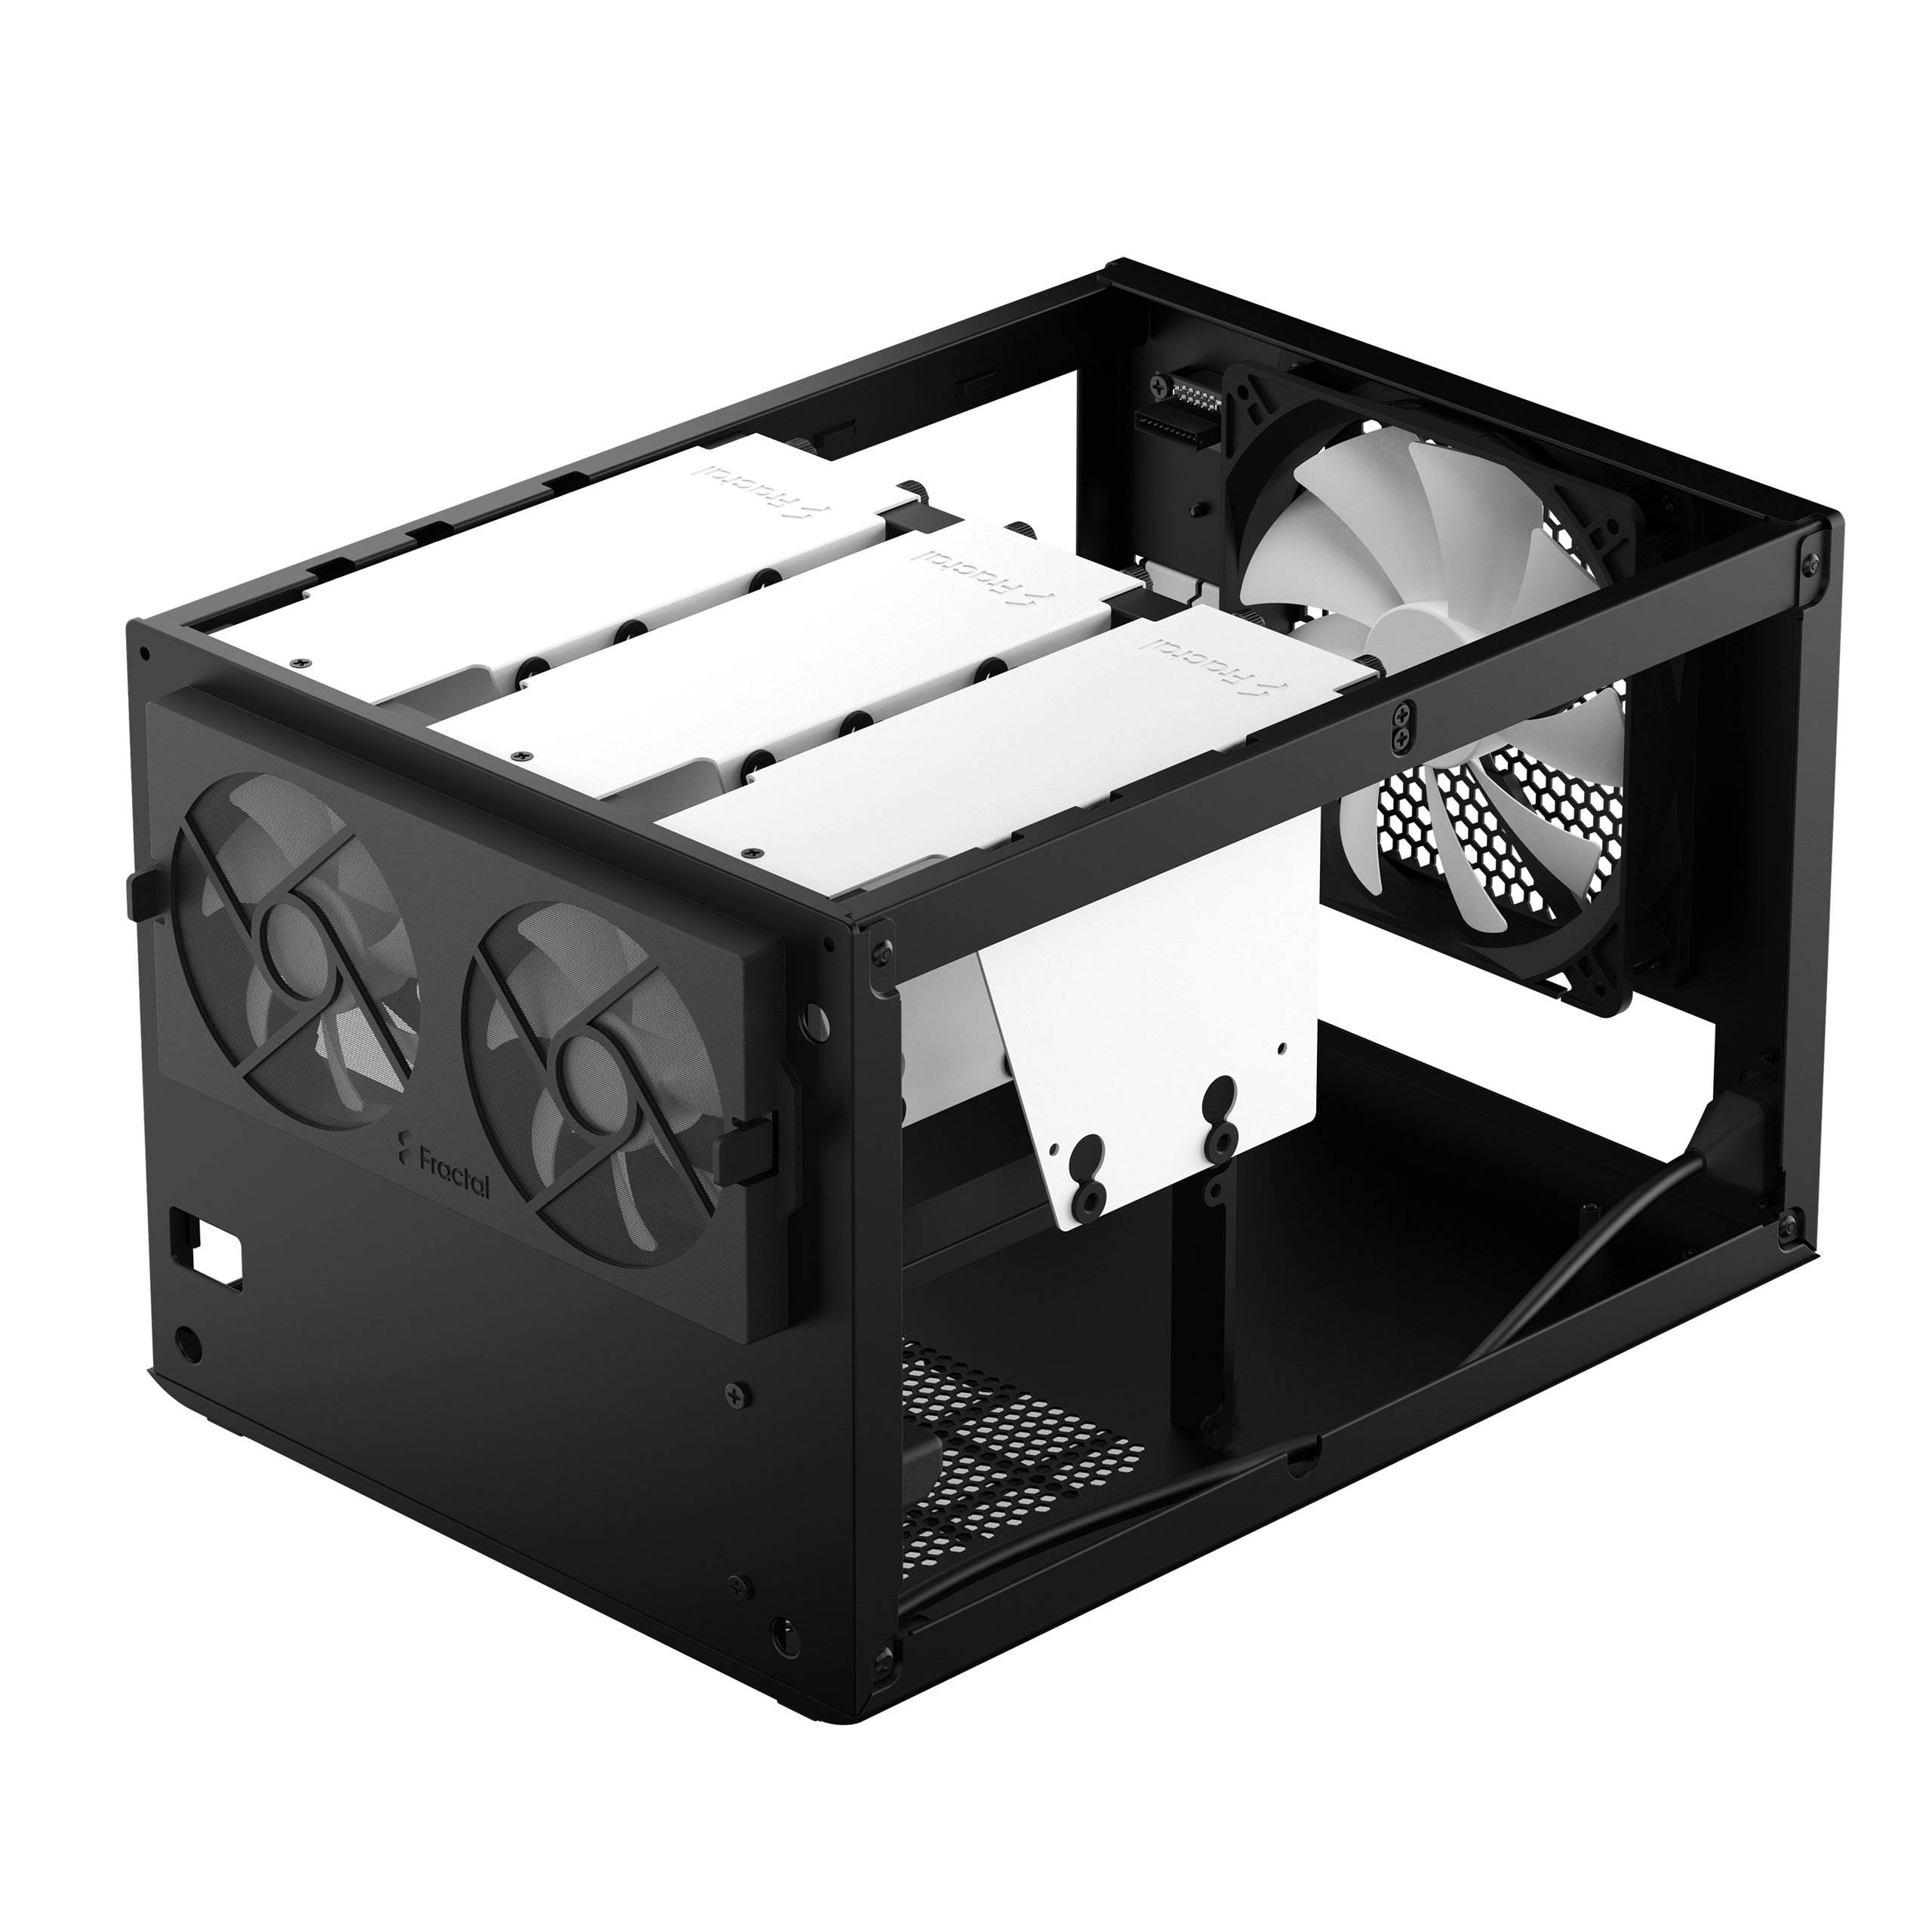 Fractal Design Node 304 Computer Case Unboxing + Overview 